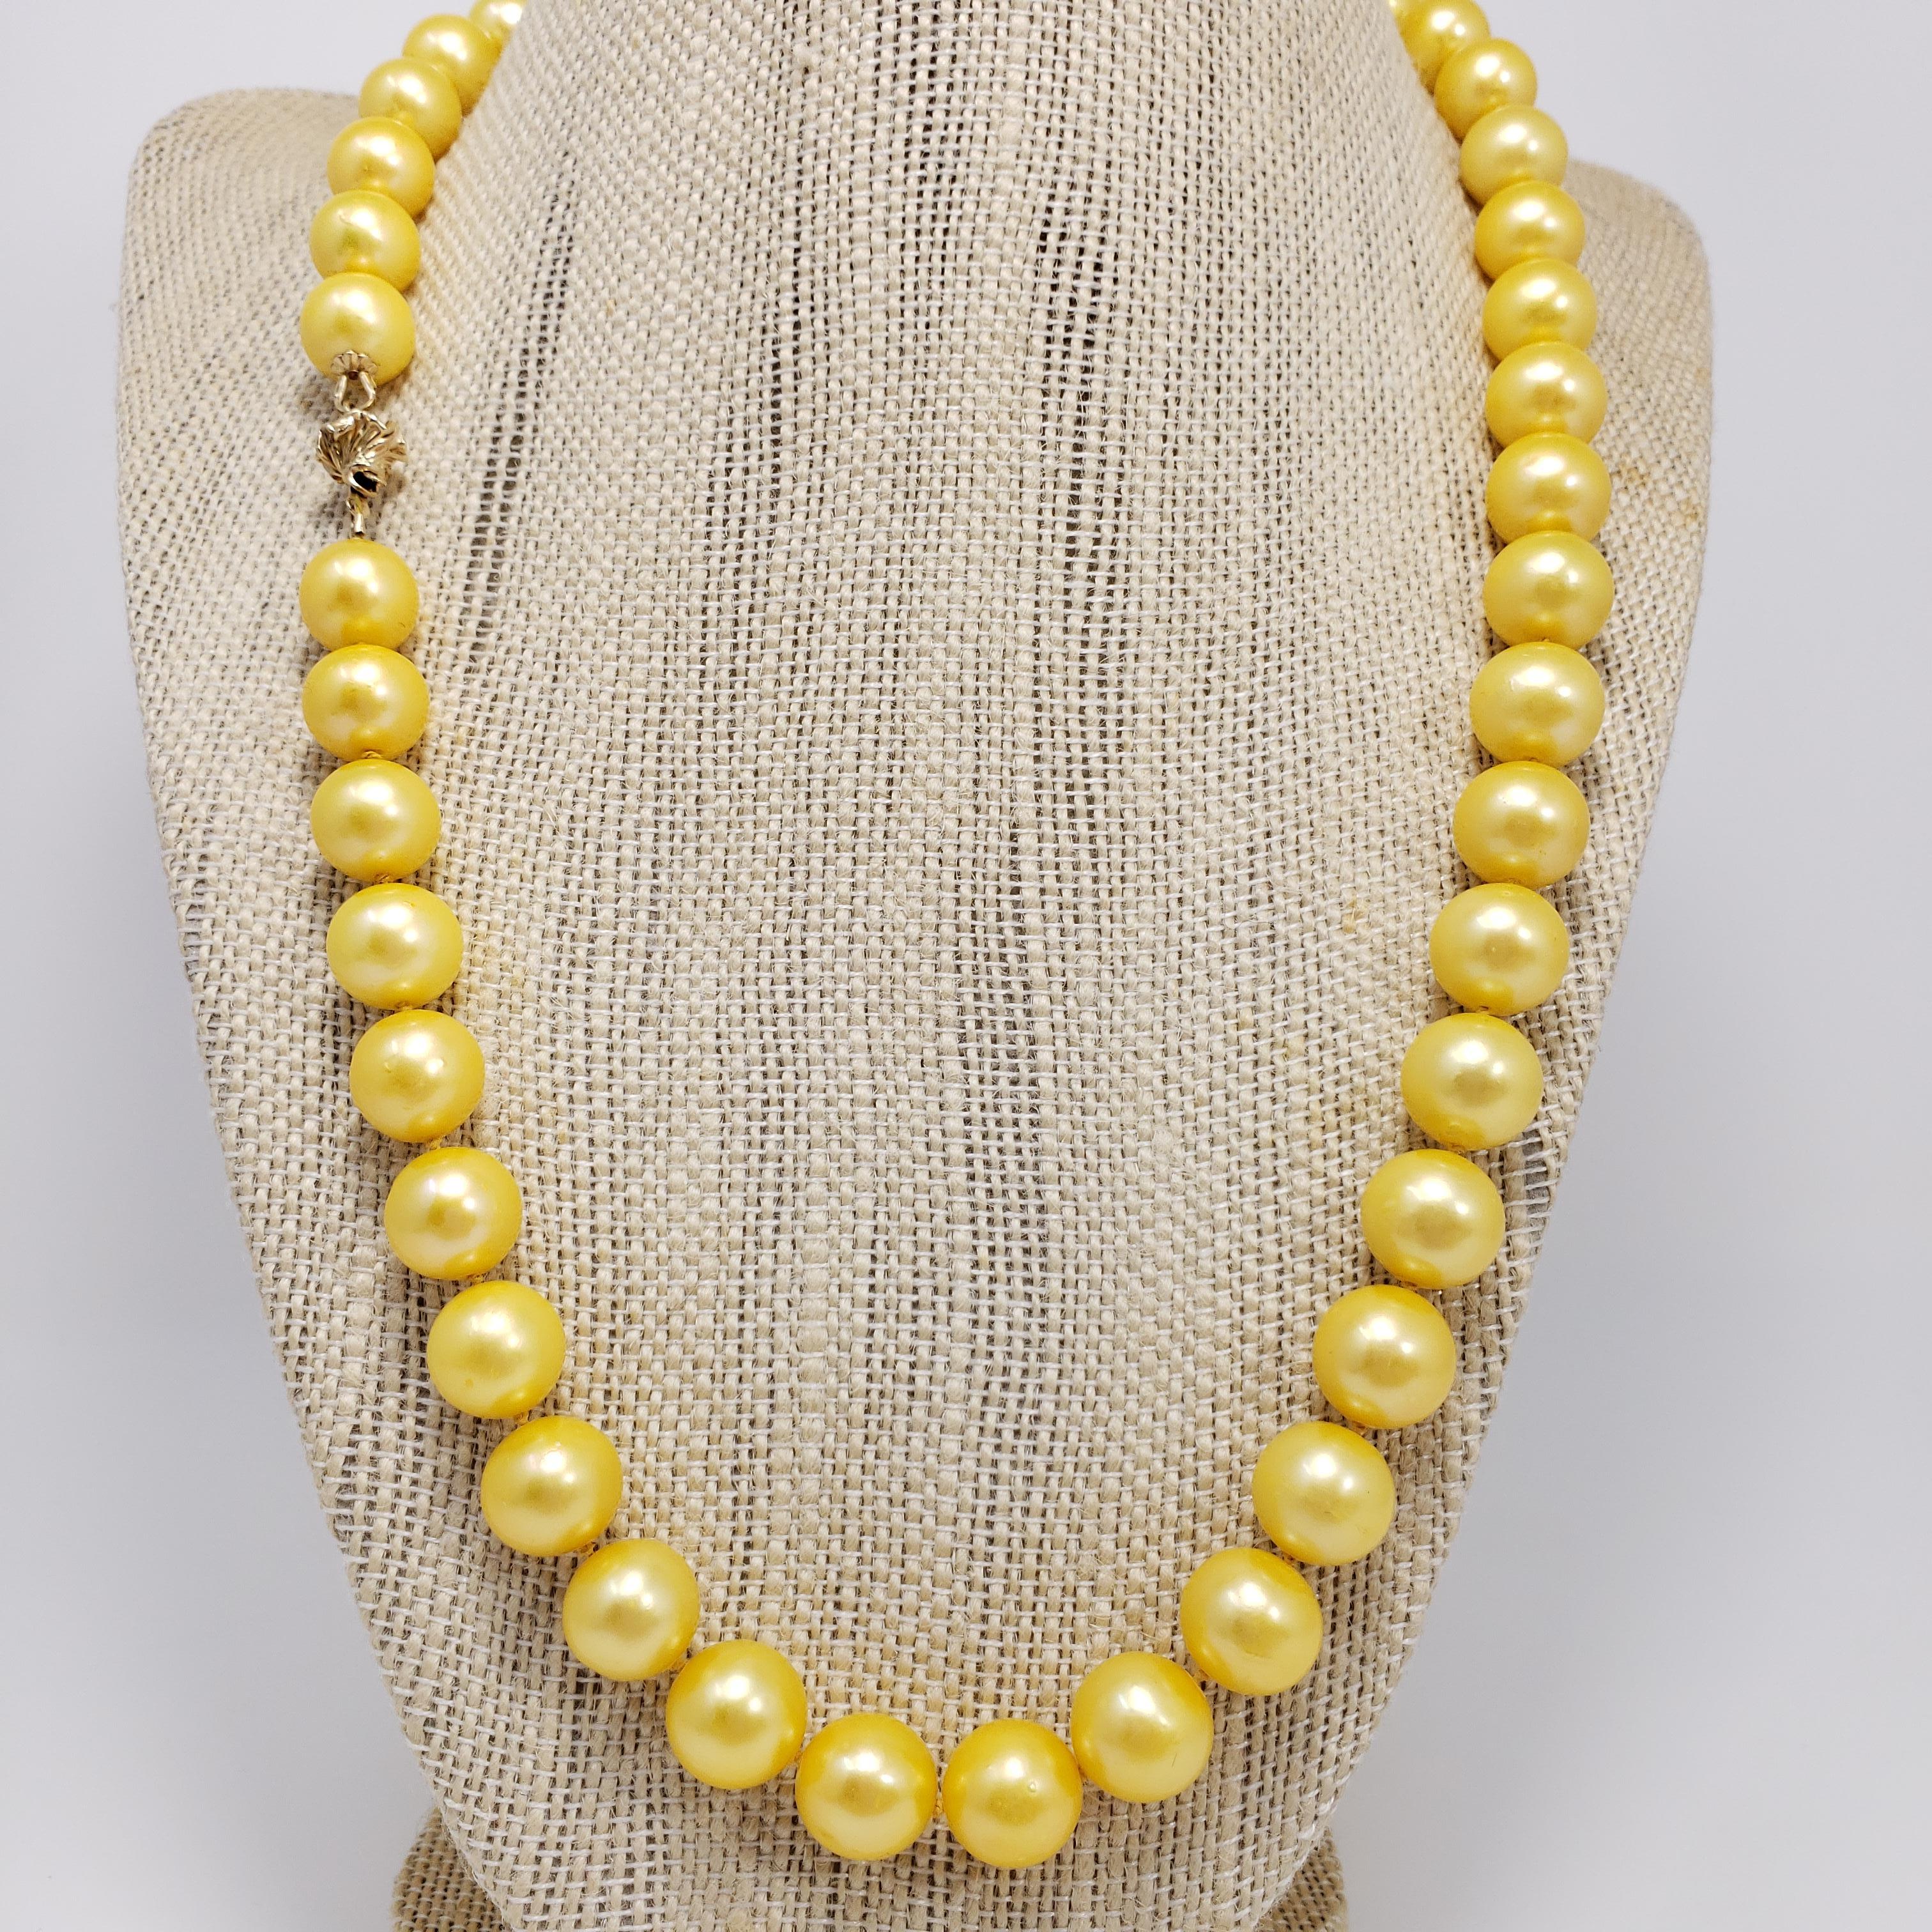 Un collier exquis composé de perles des mers du Sud dorées de 10,5 mm sur un fil de soie noué à la main. Fermeture par un fermoir en or jaune 14K. Un accessoire luxueux parfait pour tout style !

Poinçons : 585